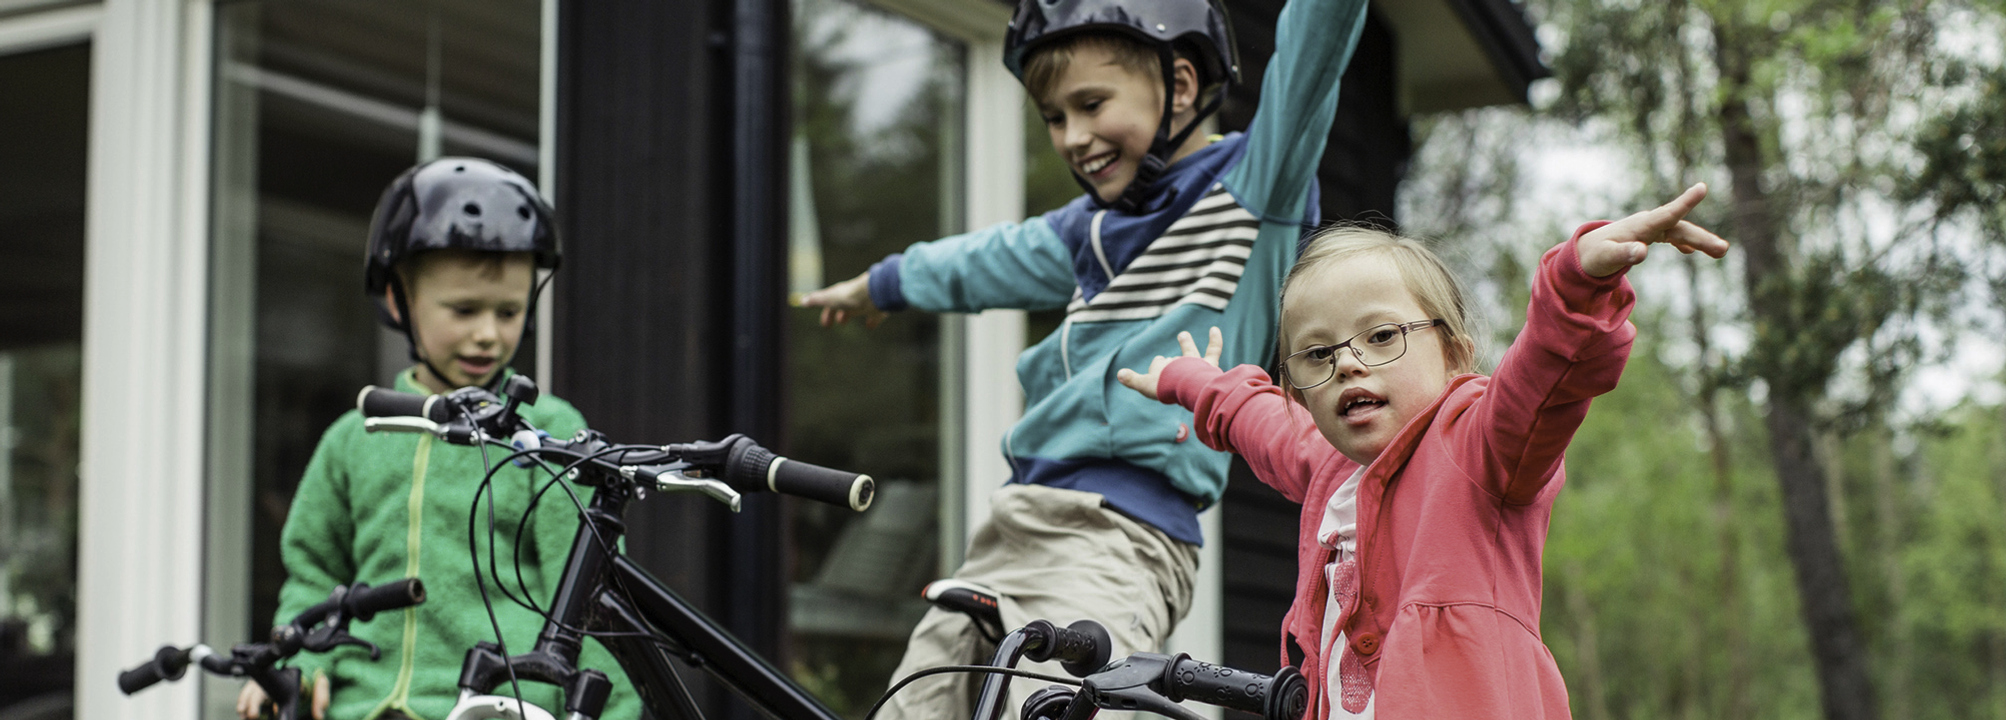 Tre barn sitter på sina cyklar och ser glada ut.